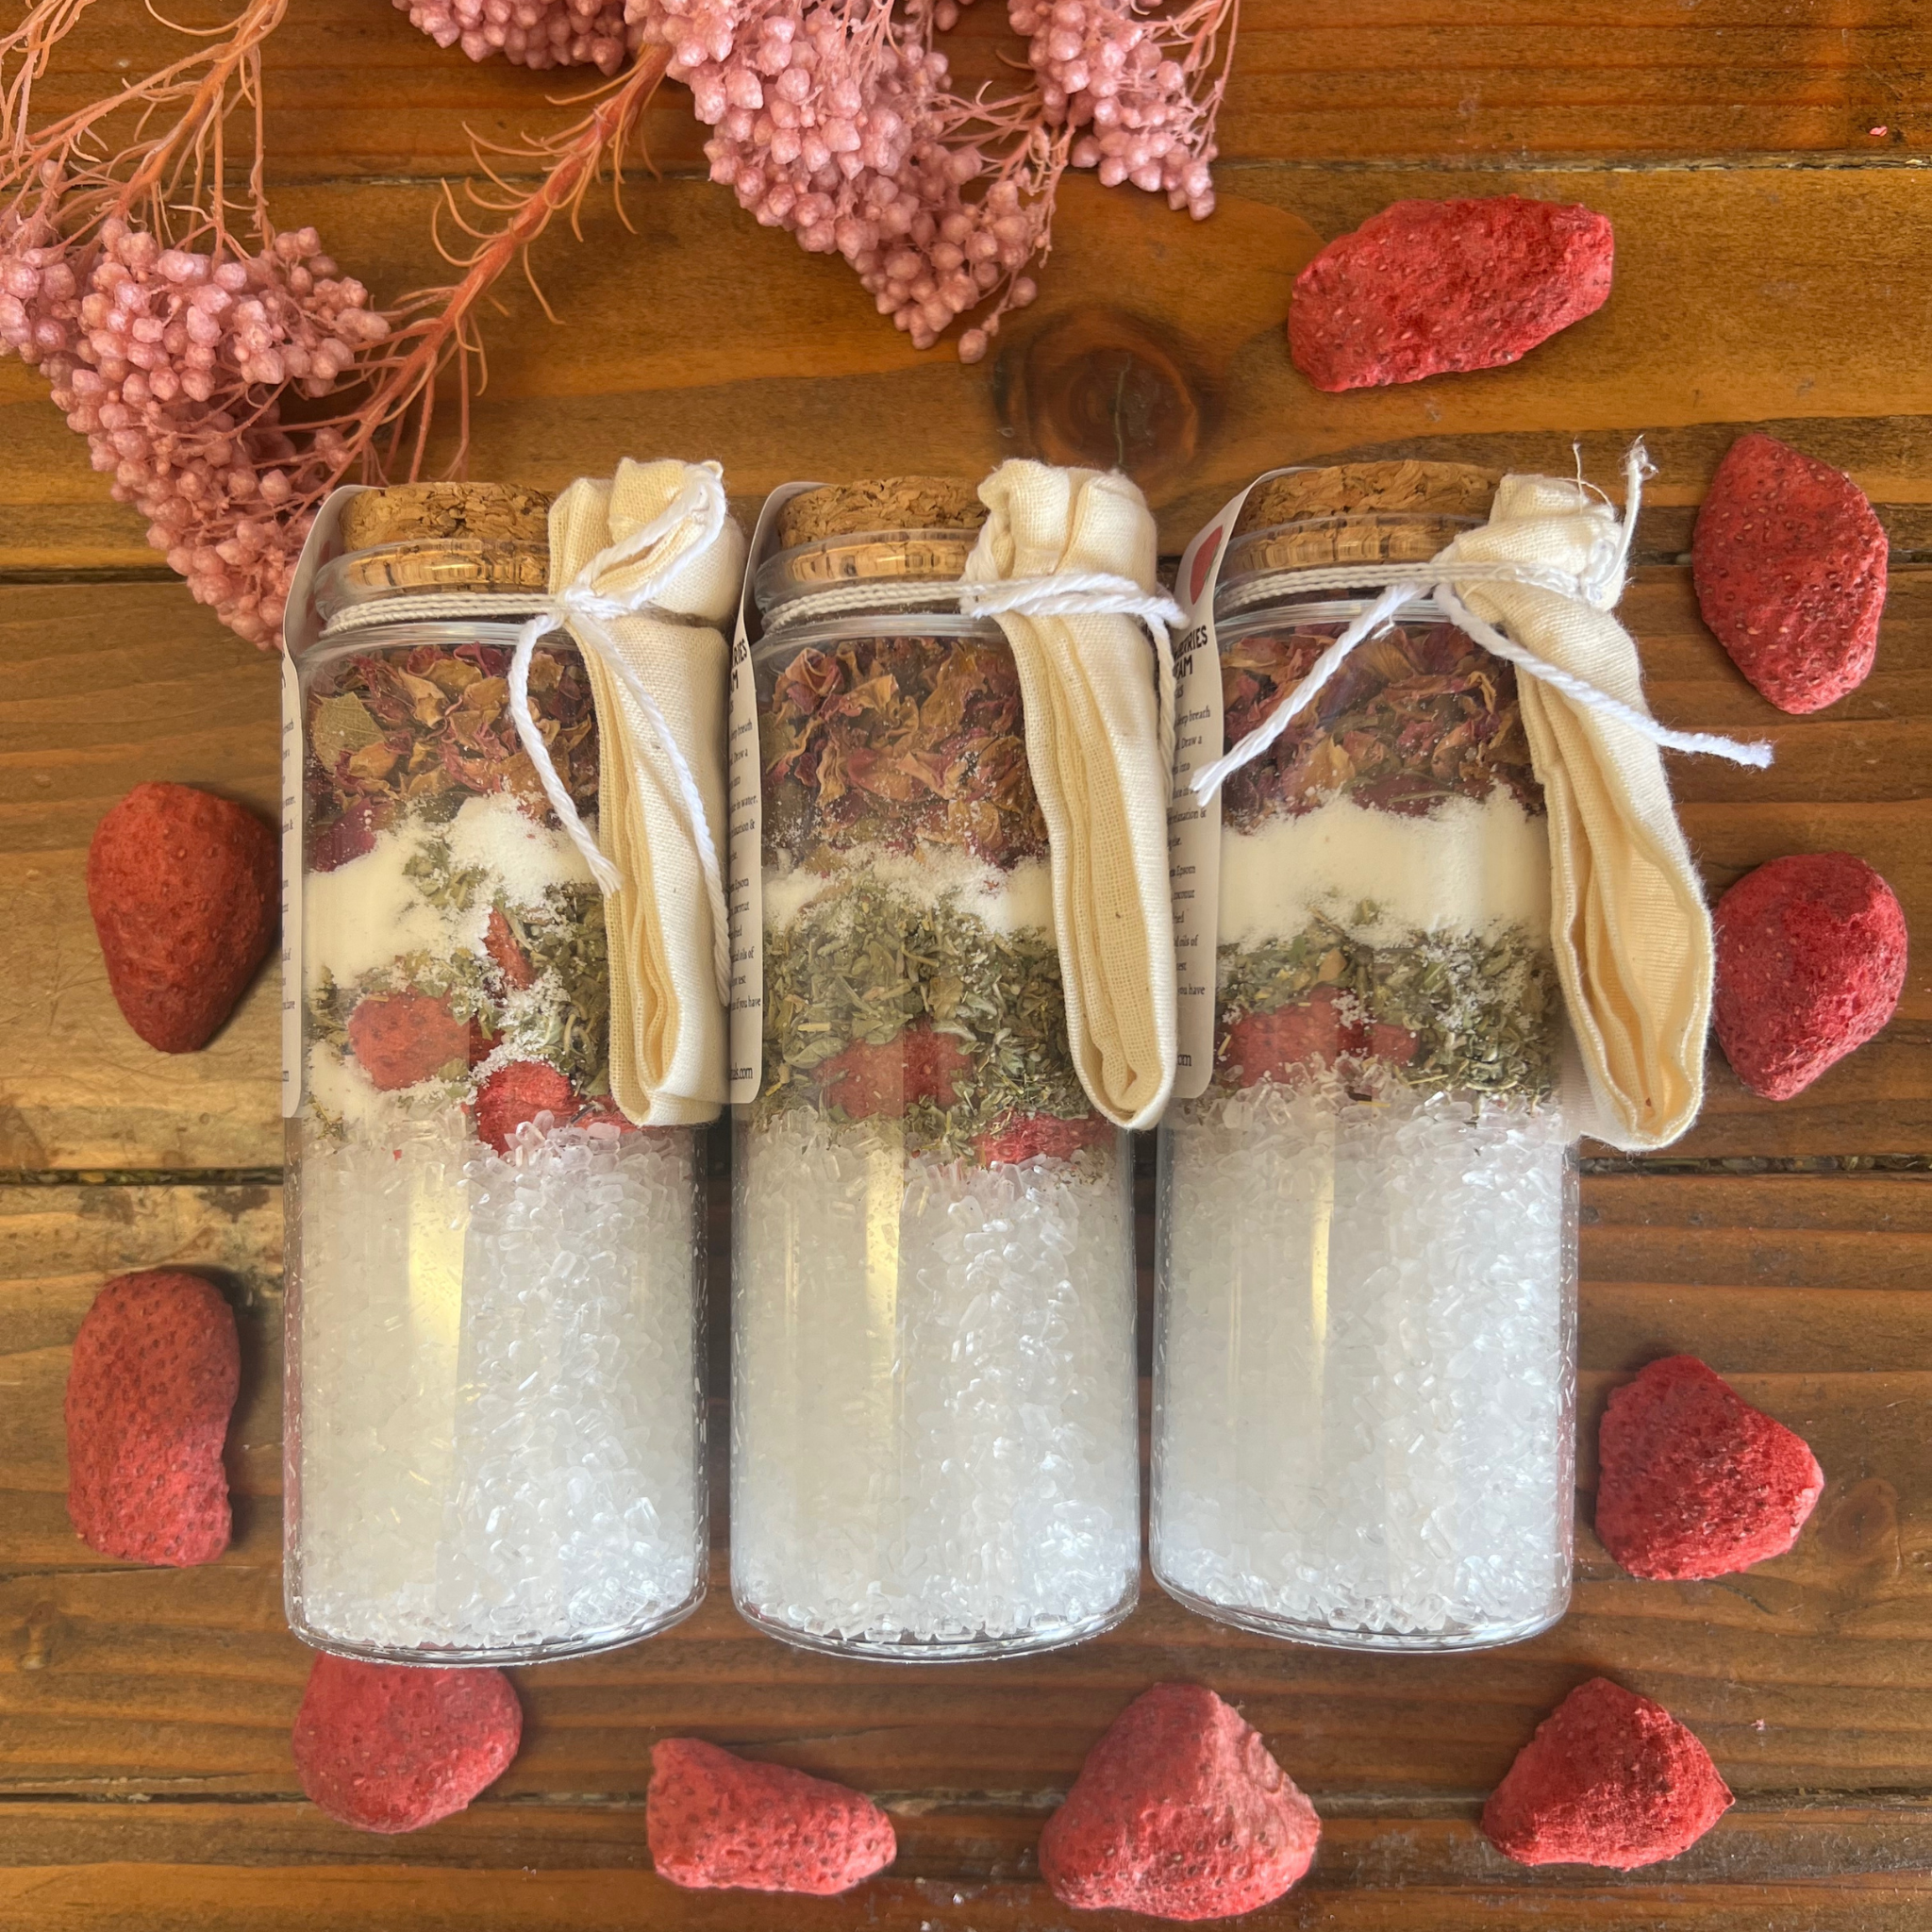 Strawberries & Cream Valentine's Day Bath Salt